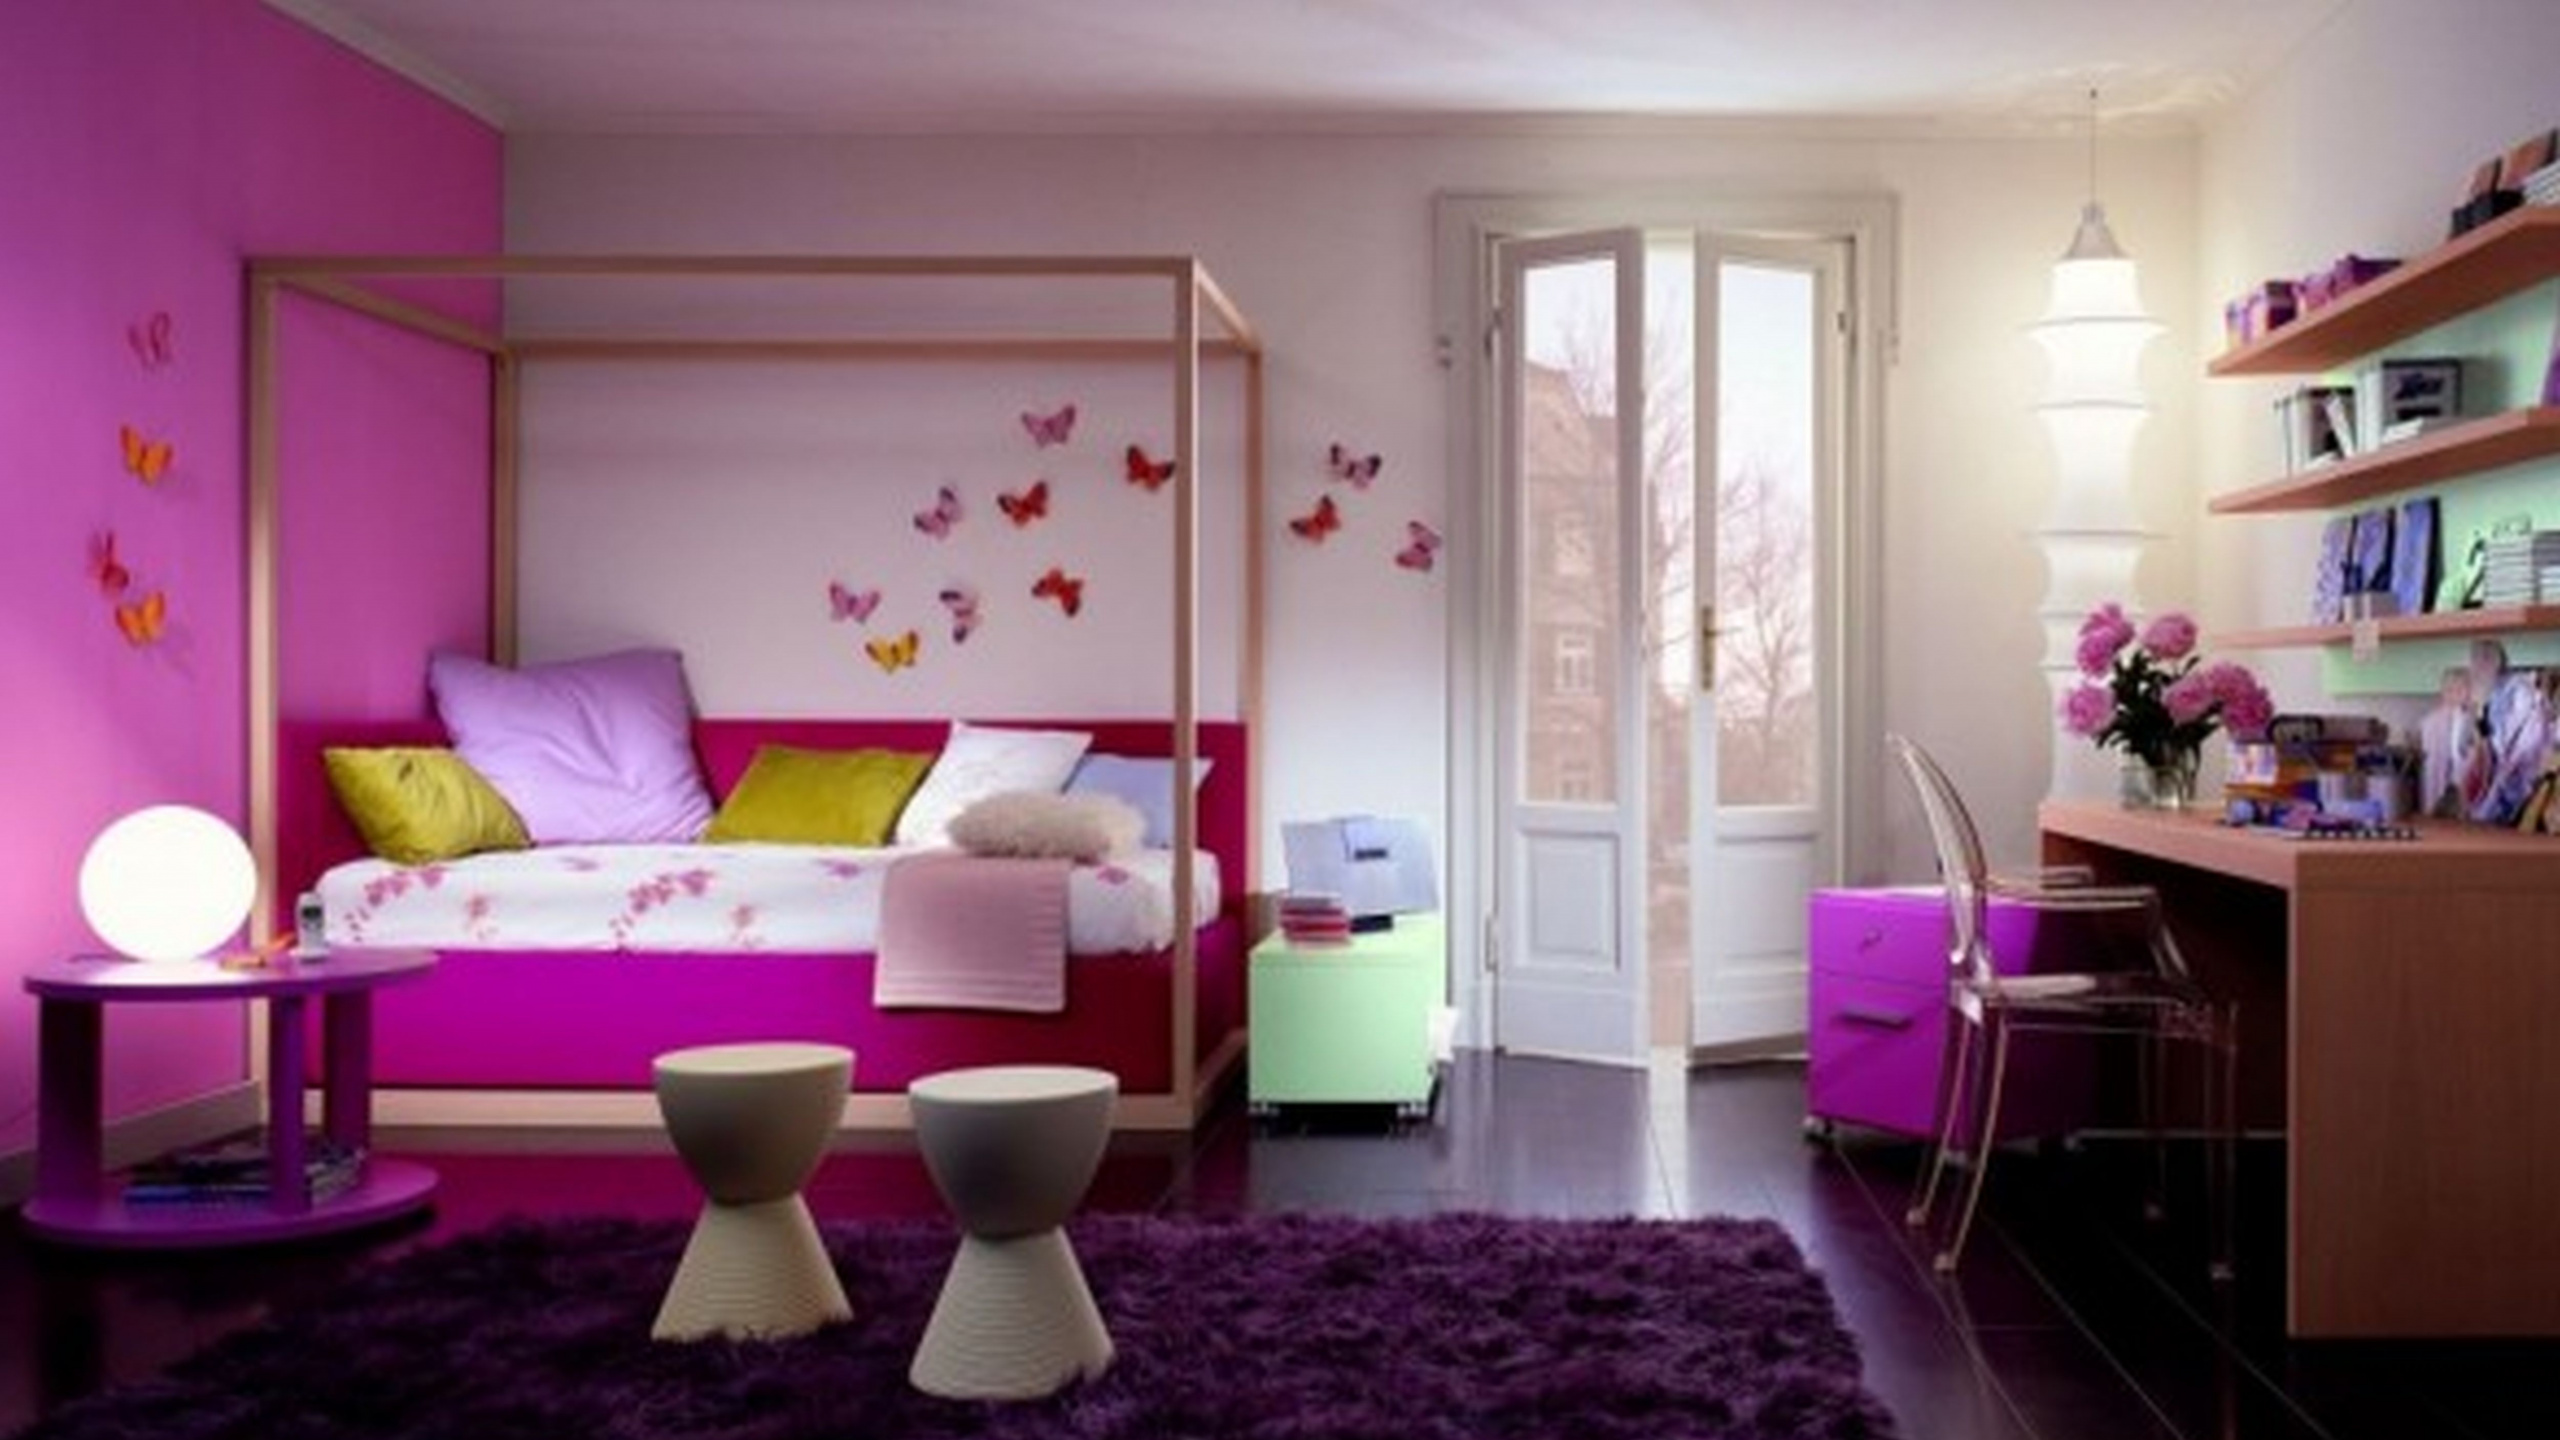 Schlafzimmer, Zimmer, Design, Möbel, Innenarchitektur. Wallpaper in 2560x1440 Resolution